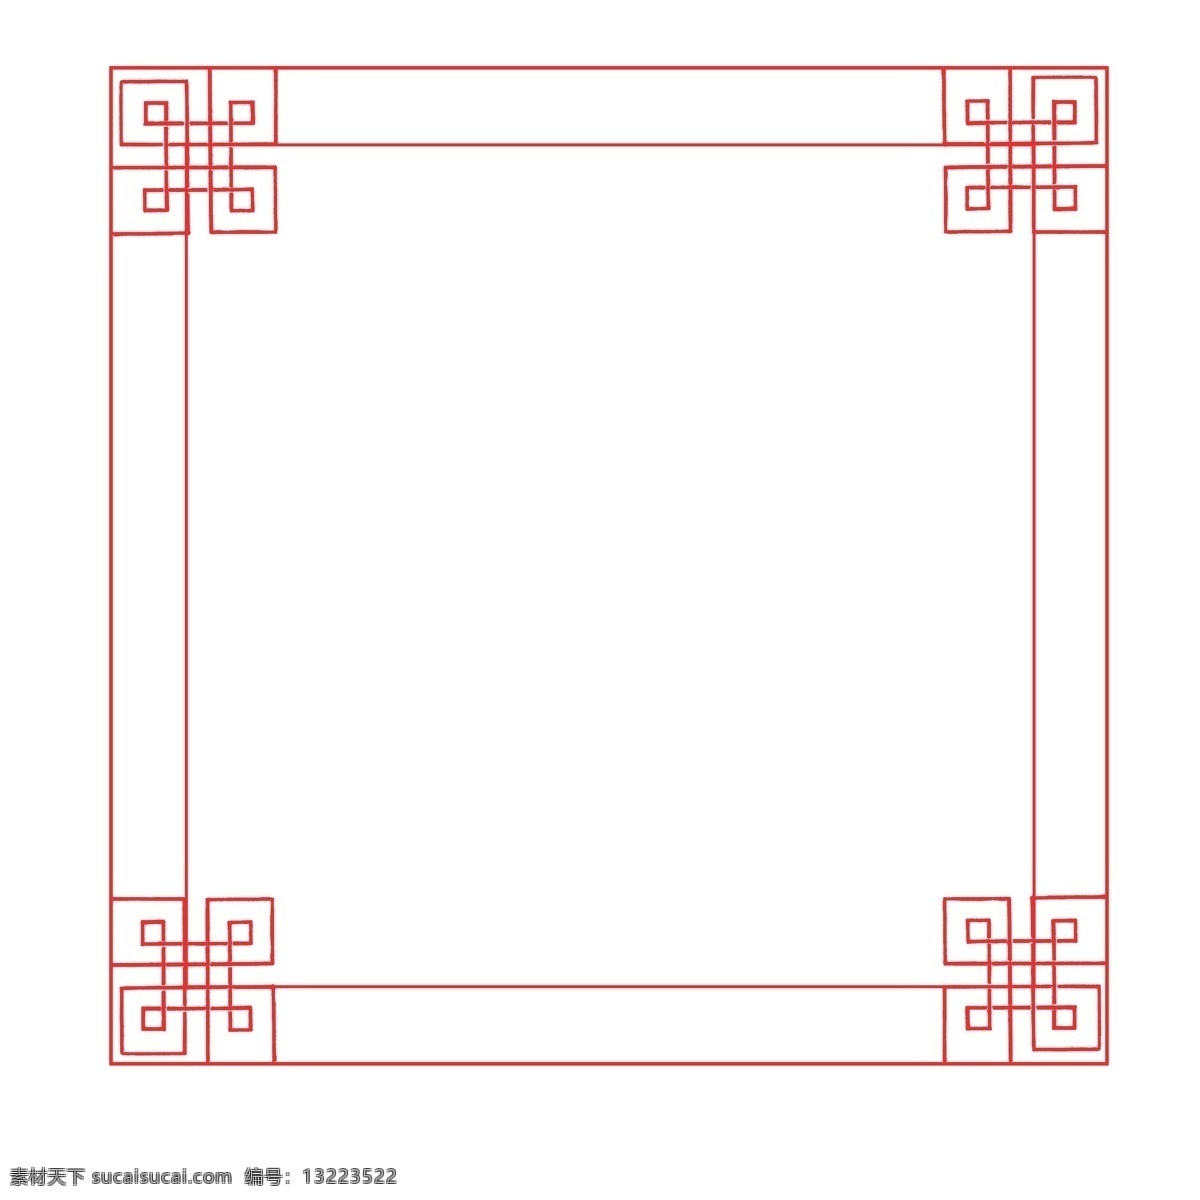 中国 古风 正方形 边框 装饰 花边 商务 封面 插图 简约 中国风 海报 黑色 简洁 大气 经典 创意